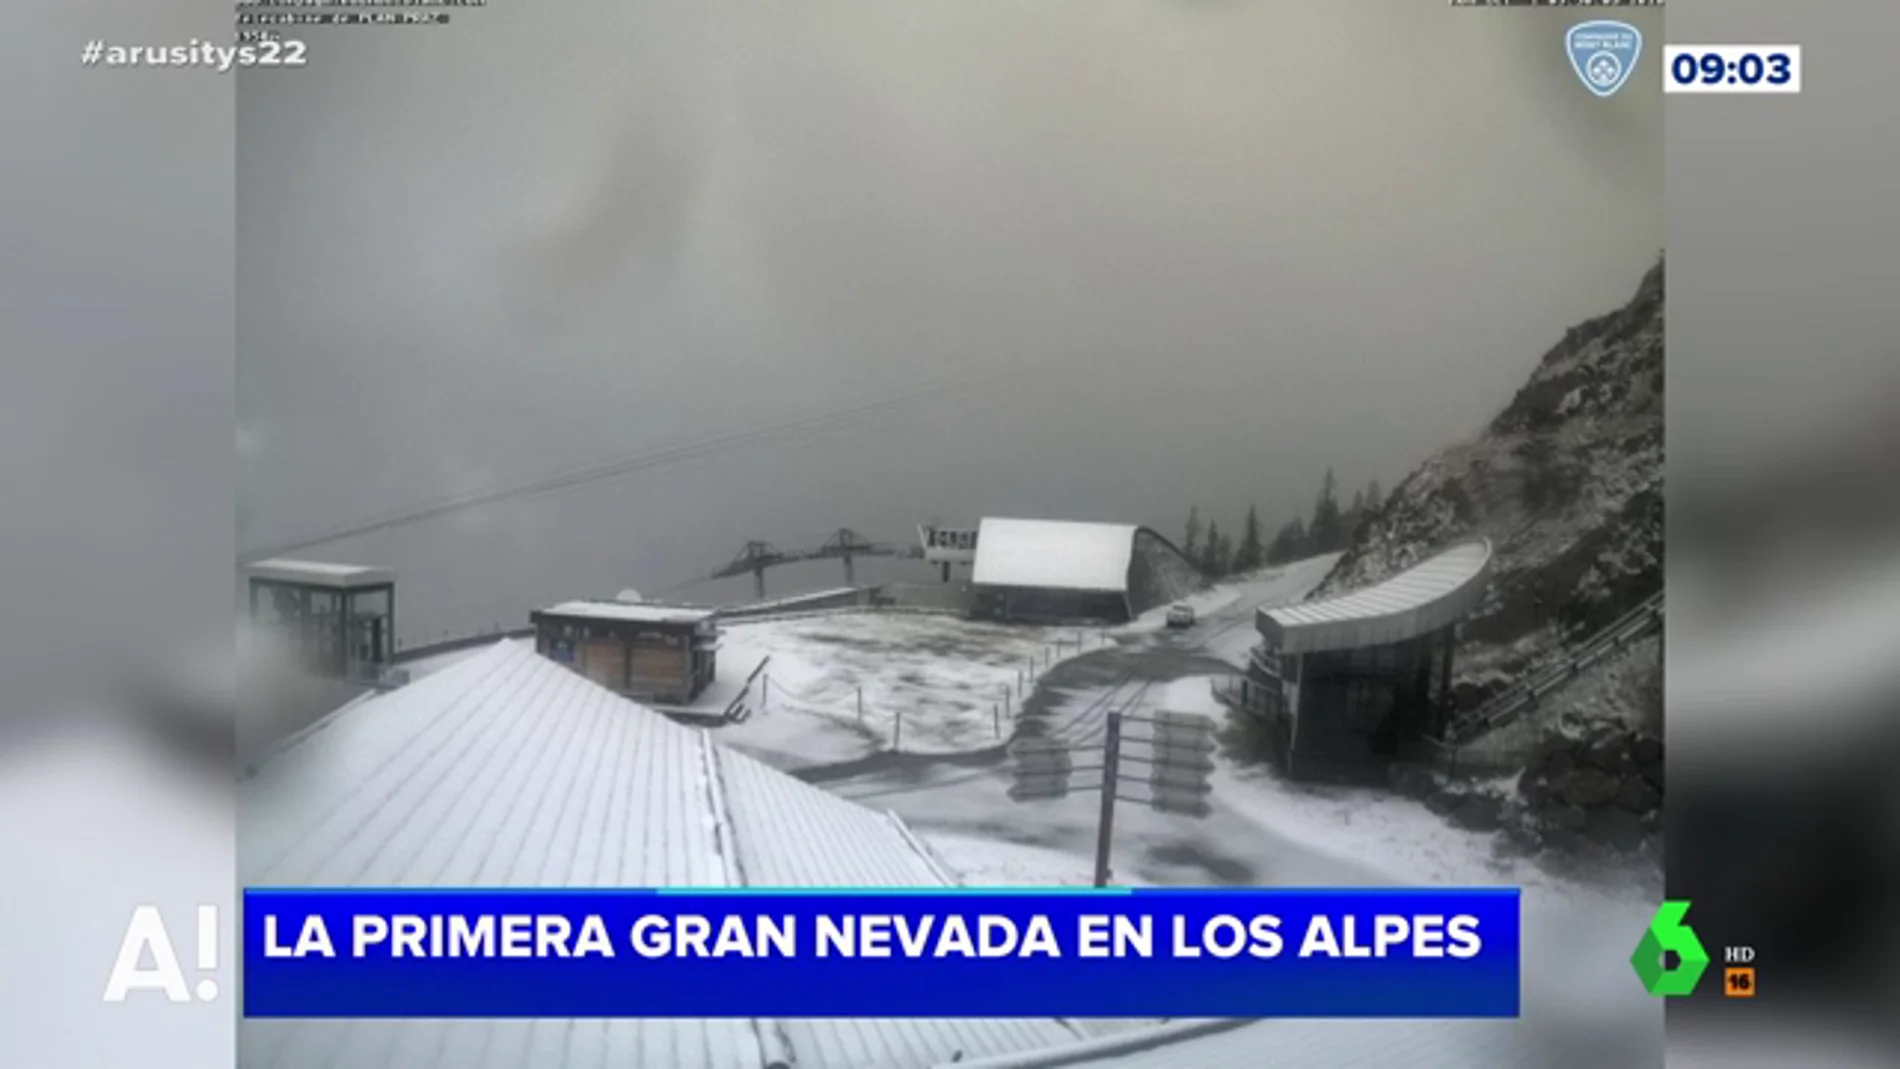 Las espectaculares imágenes de la primera gran nevada en los Alpes